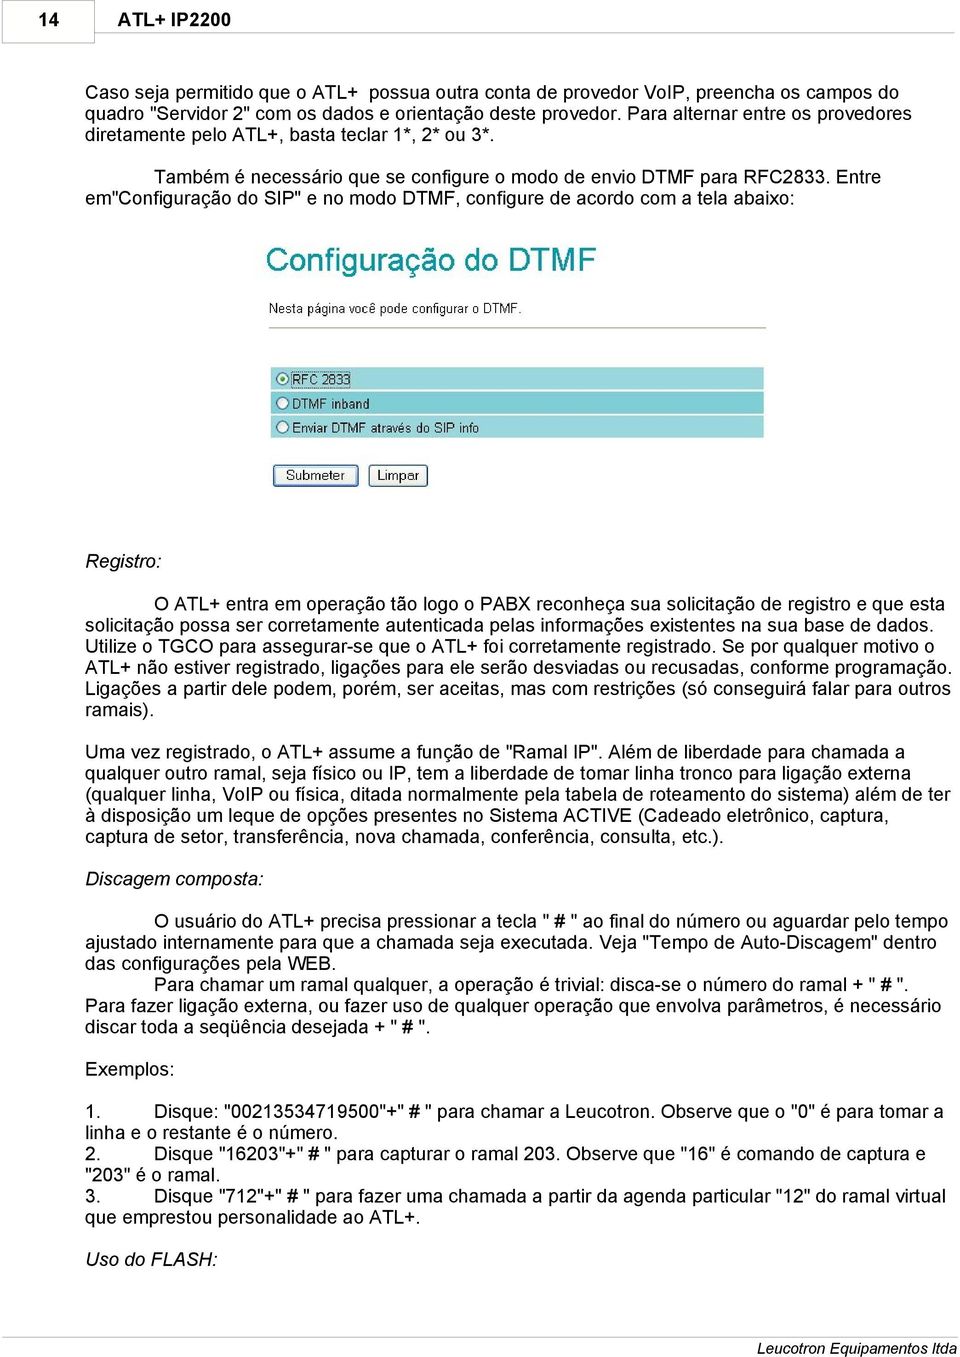 Entre em"configuração do SIP" e no modo DTMF, configure de acordo com a tela abaixo: Registro: O ATL+ entra em operação tão logo o PABX reconheça sua solicitação de registro e que esta solicitação